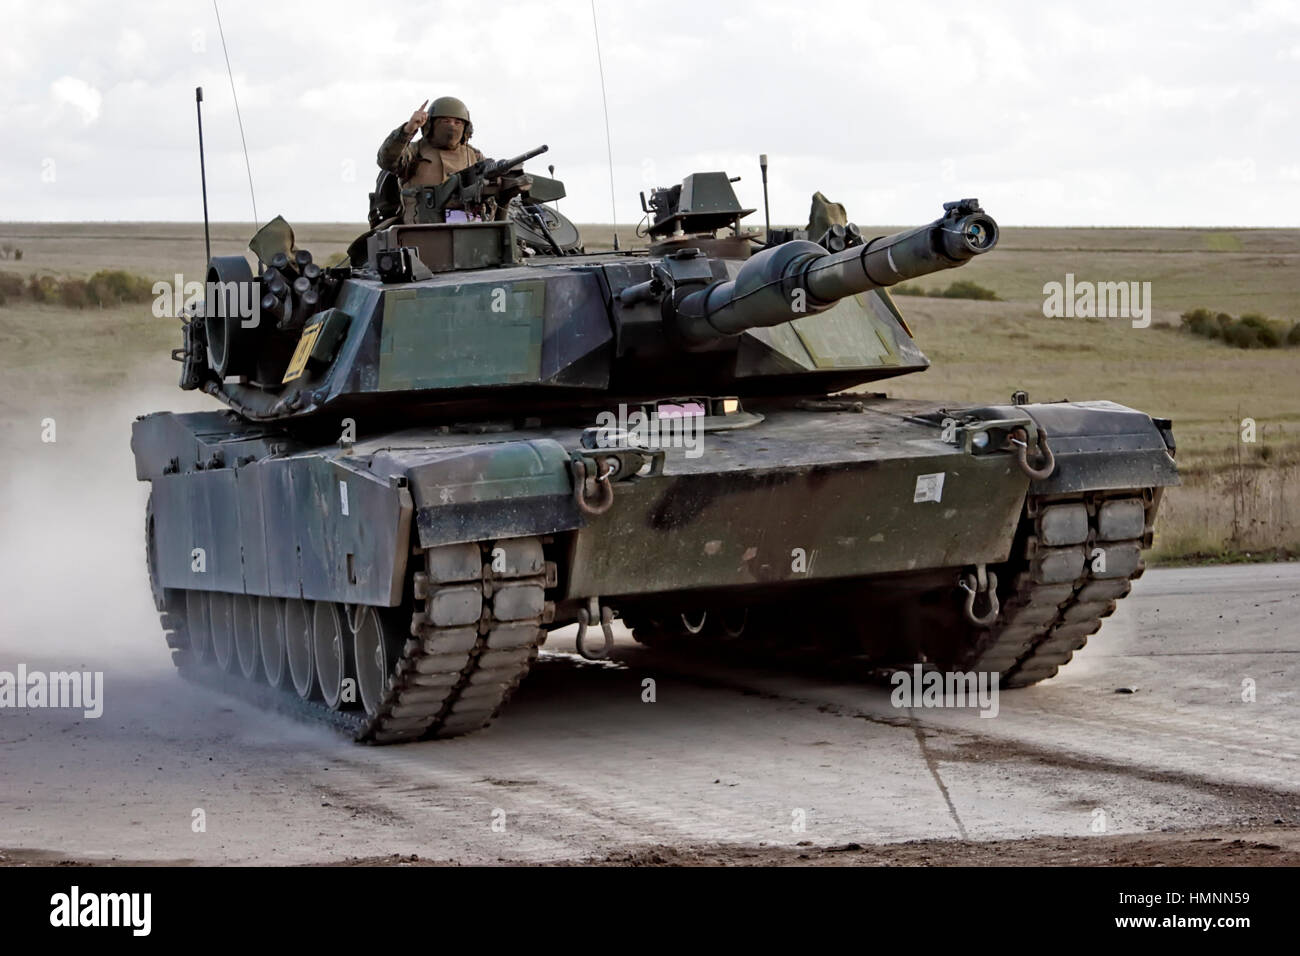 Nosotros, los Marine Corps, el M1A1 Abrams, tanque de batalla principal, la llanura de Salisbury, Zona de Entrenamiento, Wiltshire, UK, 2005.tanque del ejército Foto de stock